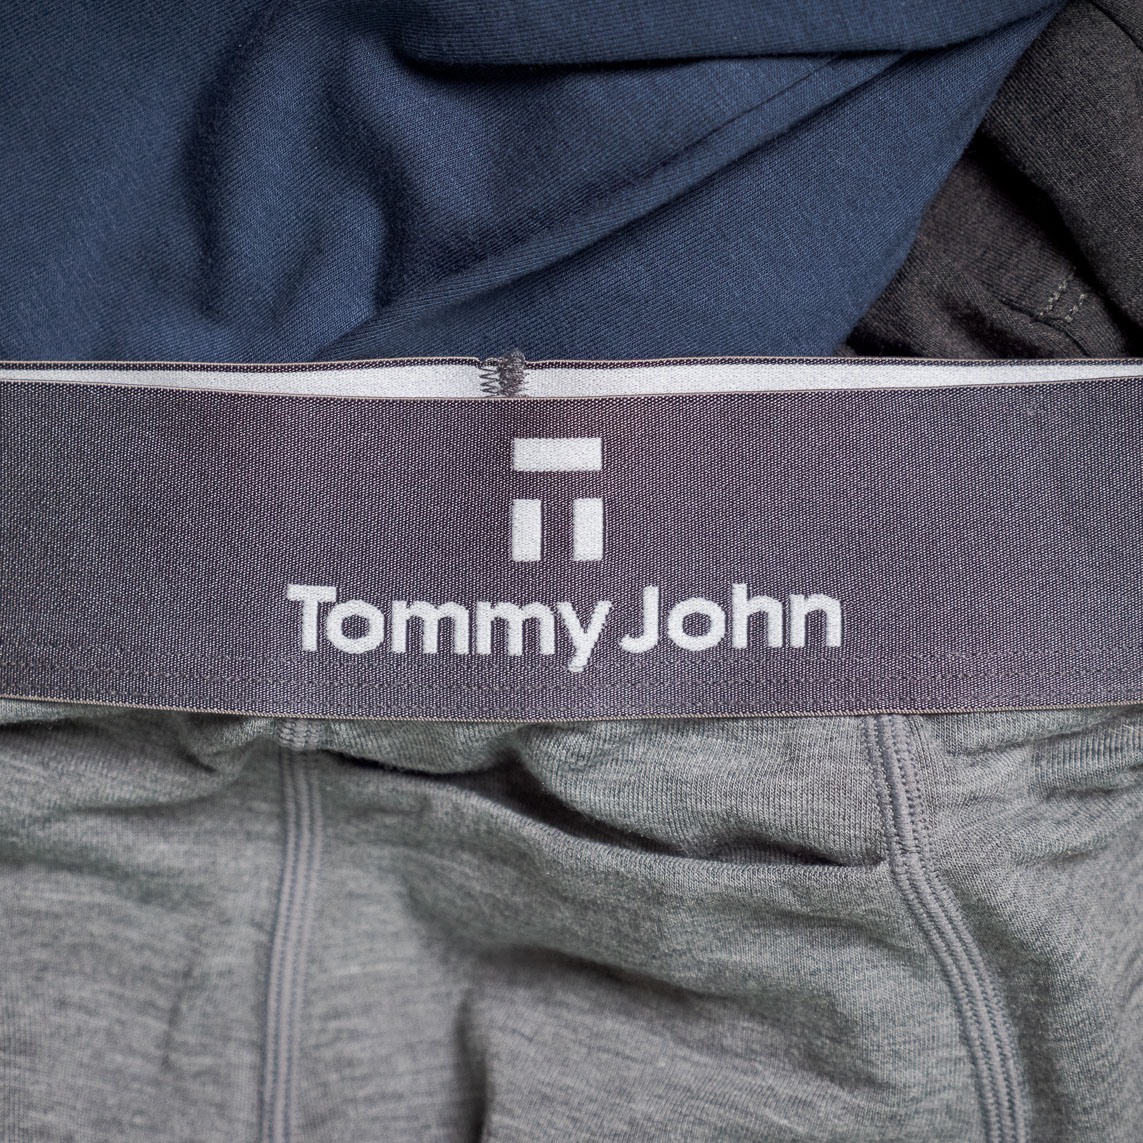 Tommy John underwear review